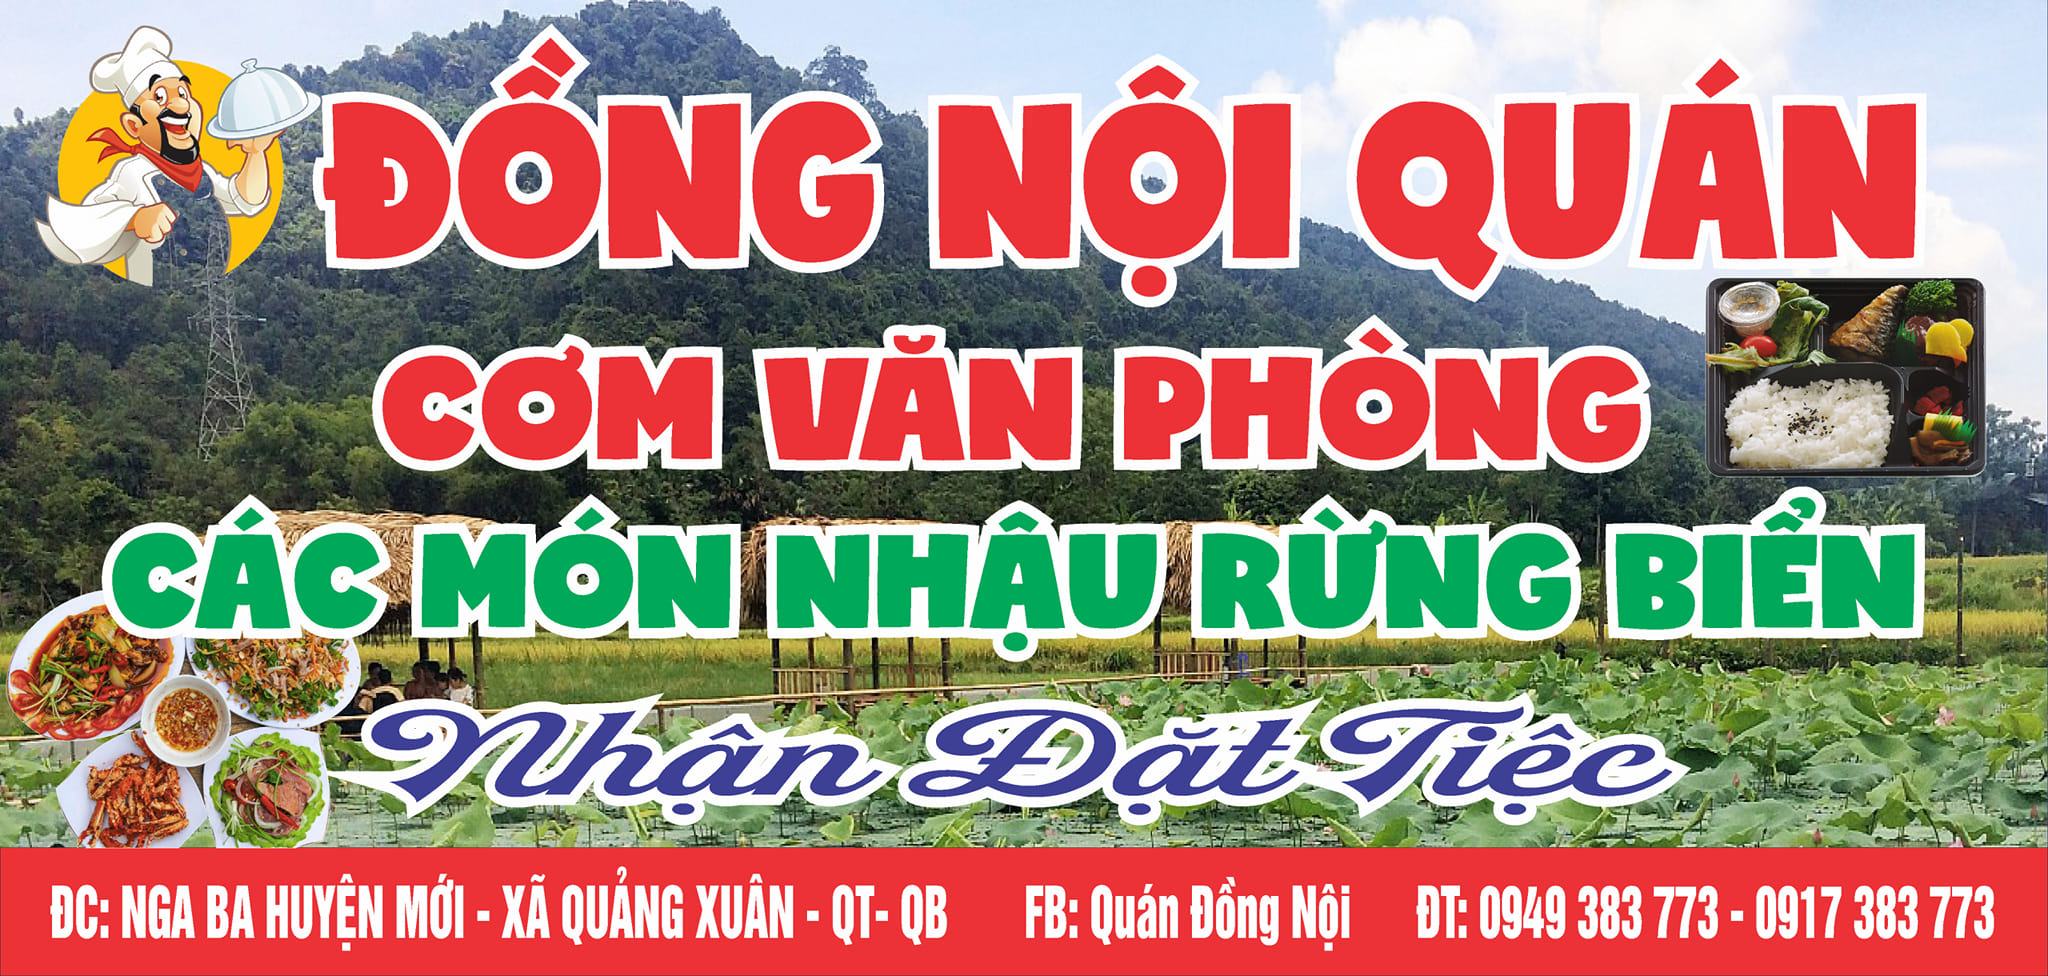 Quan Nhau Ngon Quang Trach Quang Binh 1